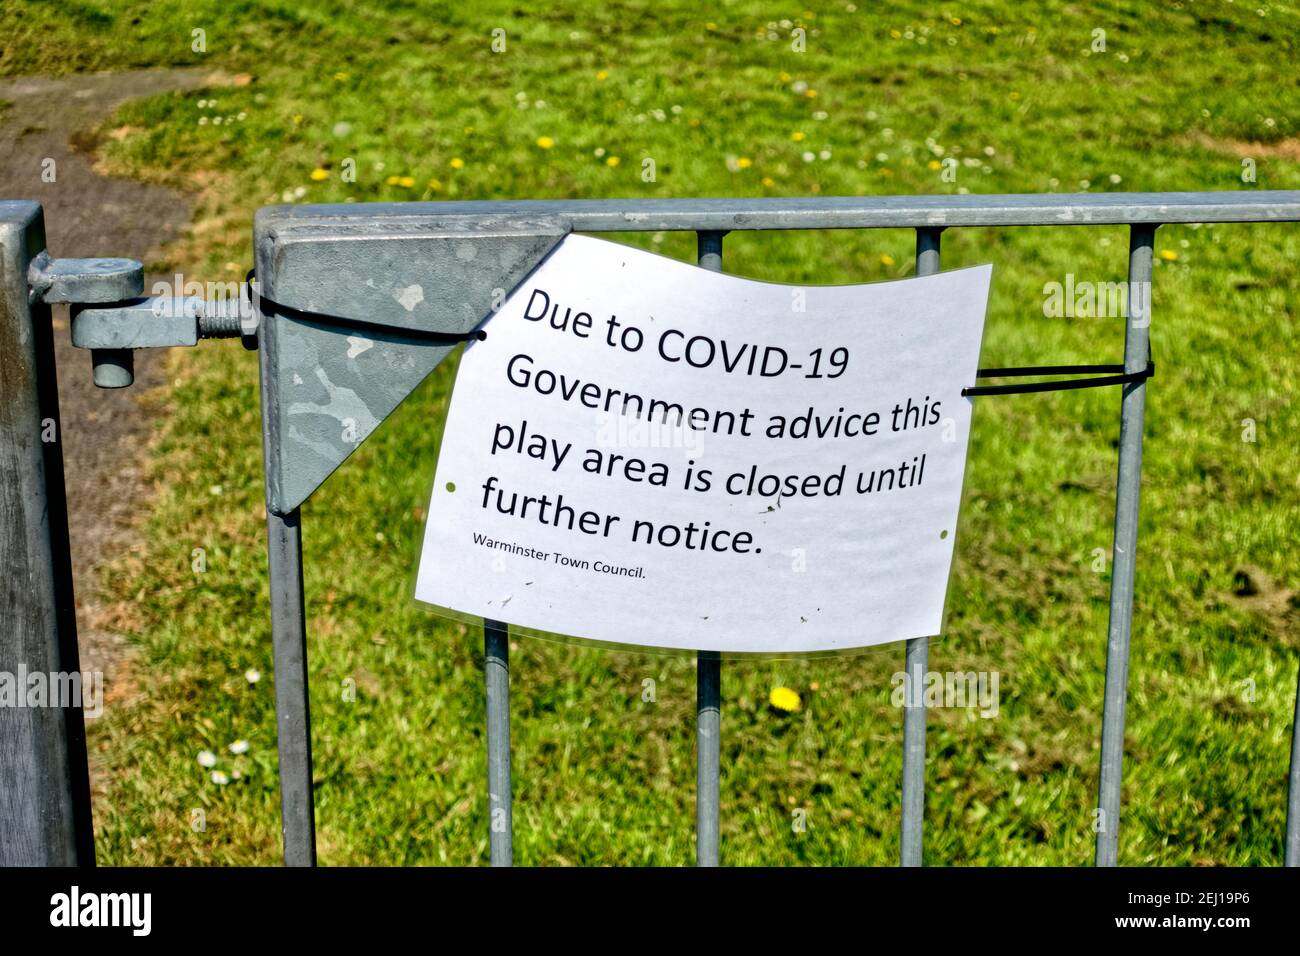 Warminster,Wiltshire UK - avril 24 2020 : un avis joint aux rambardes du conseil municipal de Warminster indiquant qu'une aire de jeux pour enfants est fermée Banque D'Images